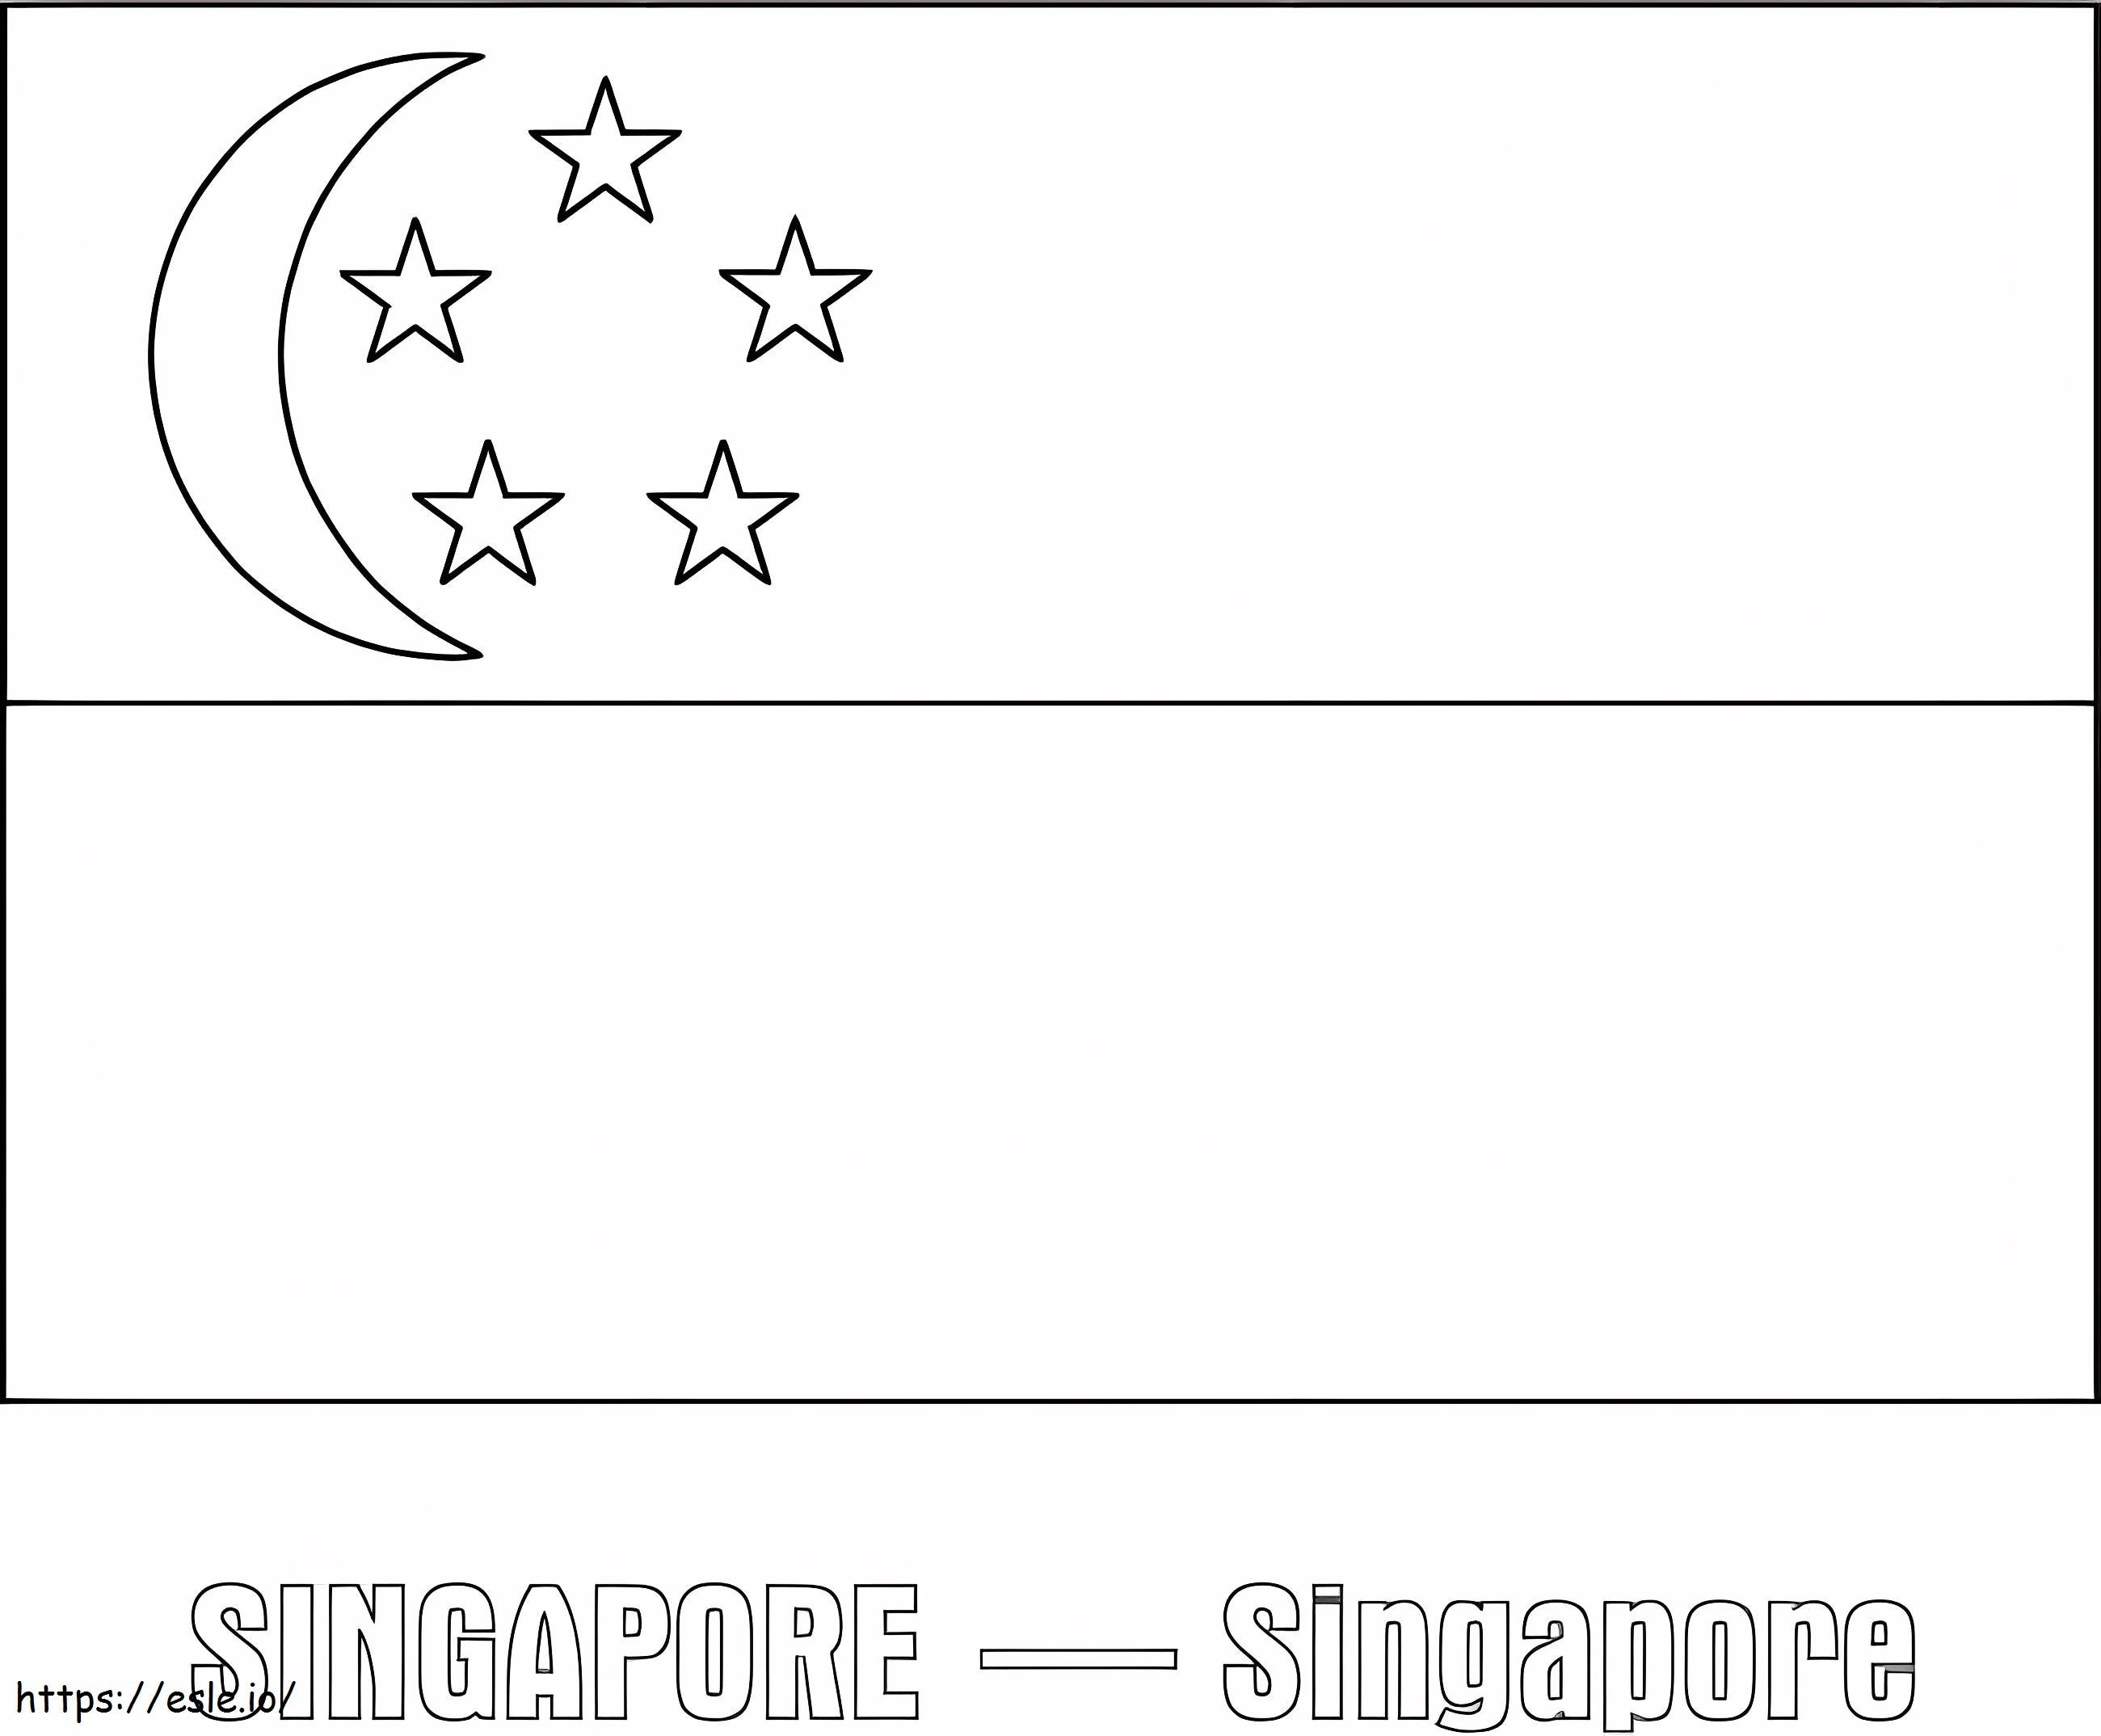 Singapur Bayrağı boyama